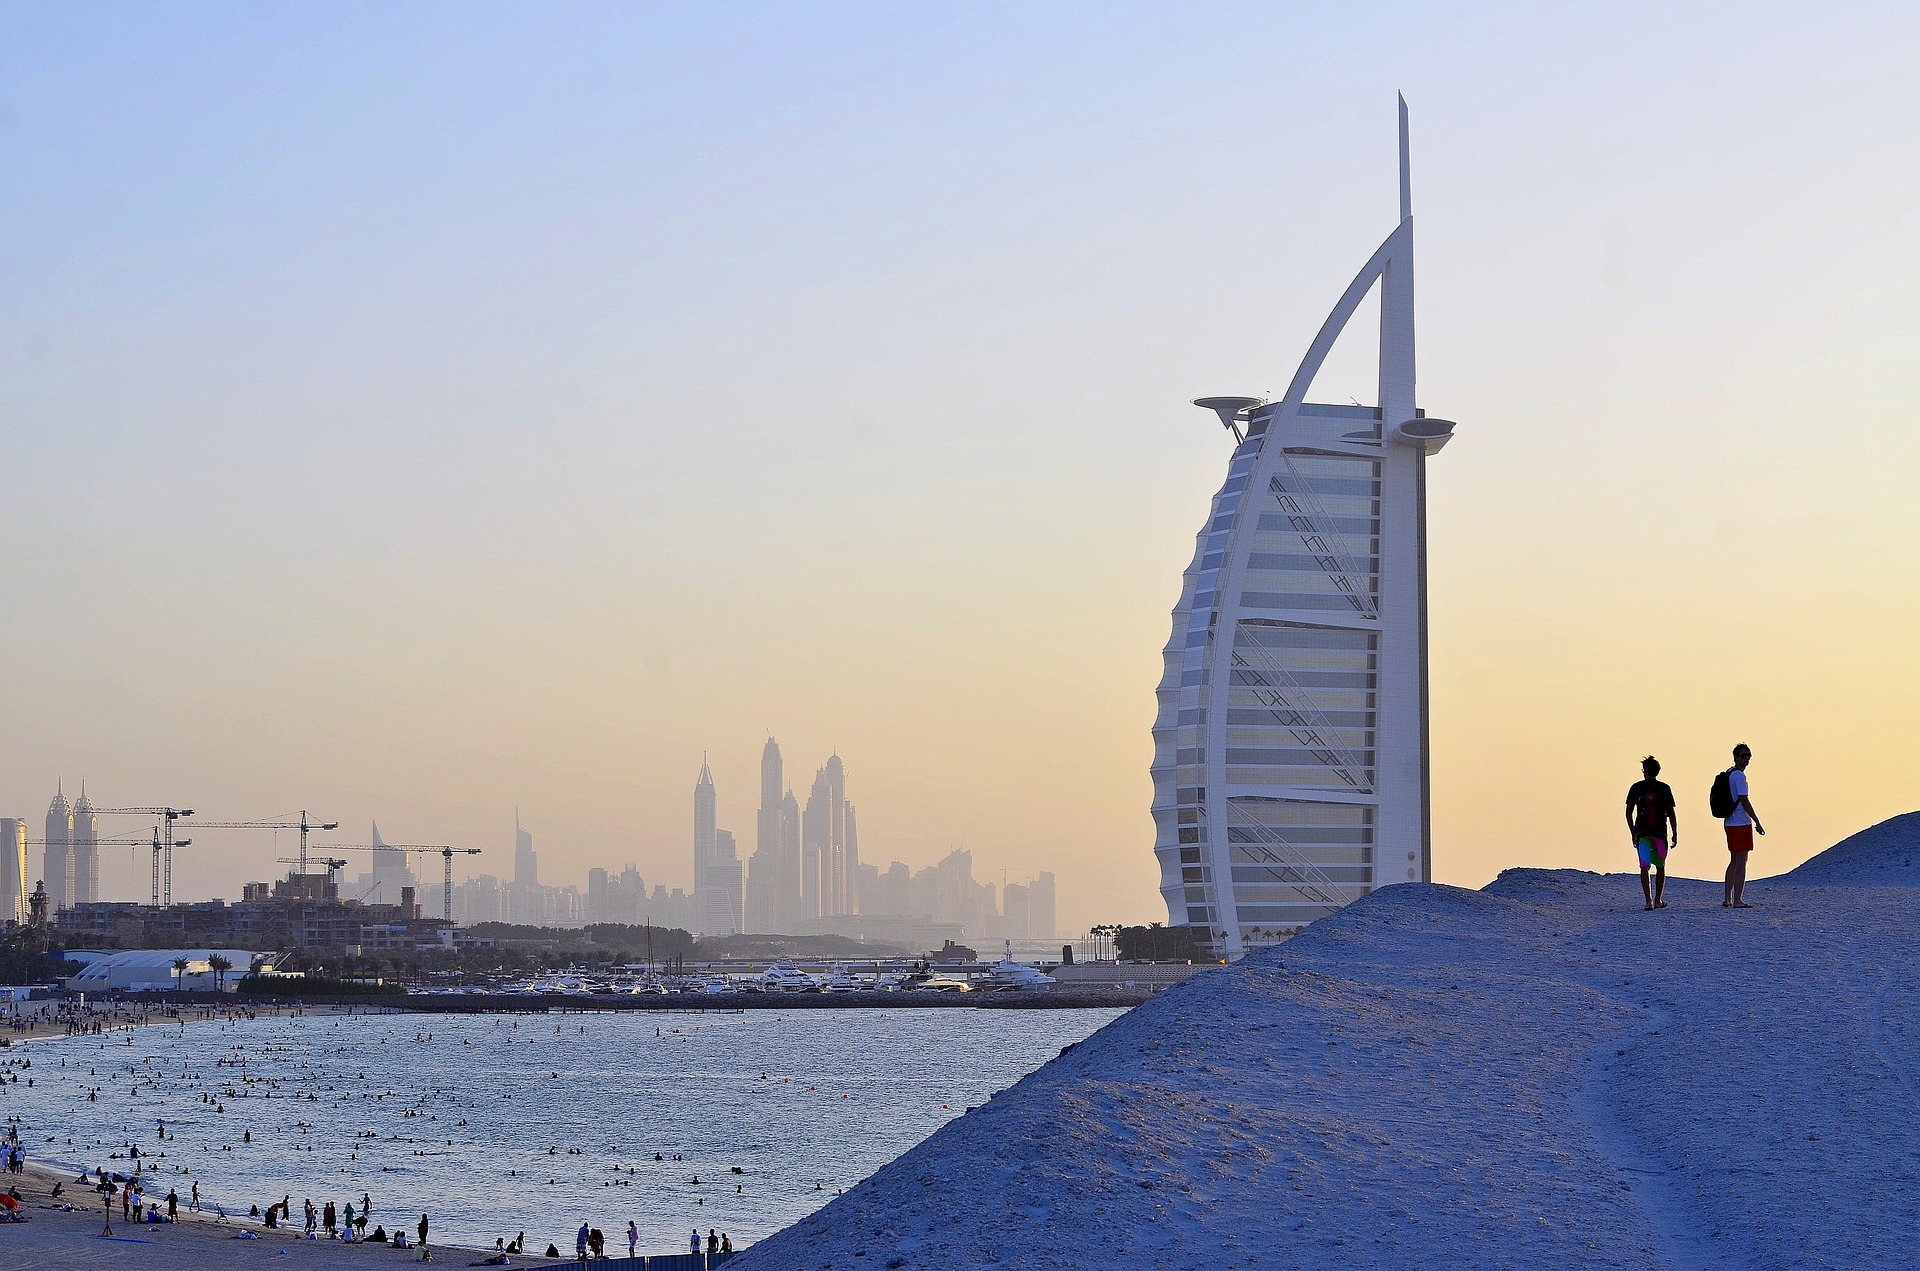 خبير يتوقع انتعاش حركة السياحة بمدينة دبي Dubai خلال الفترة المقبلة